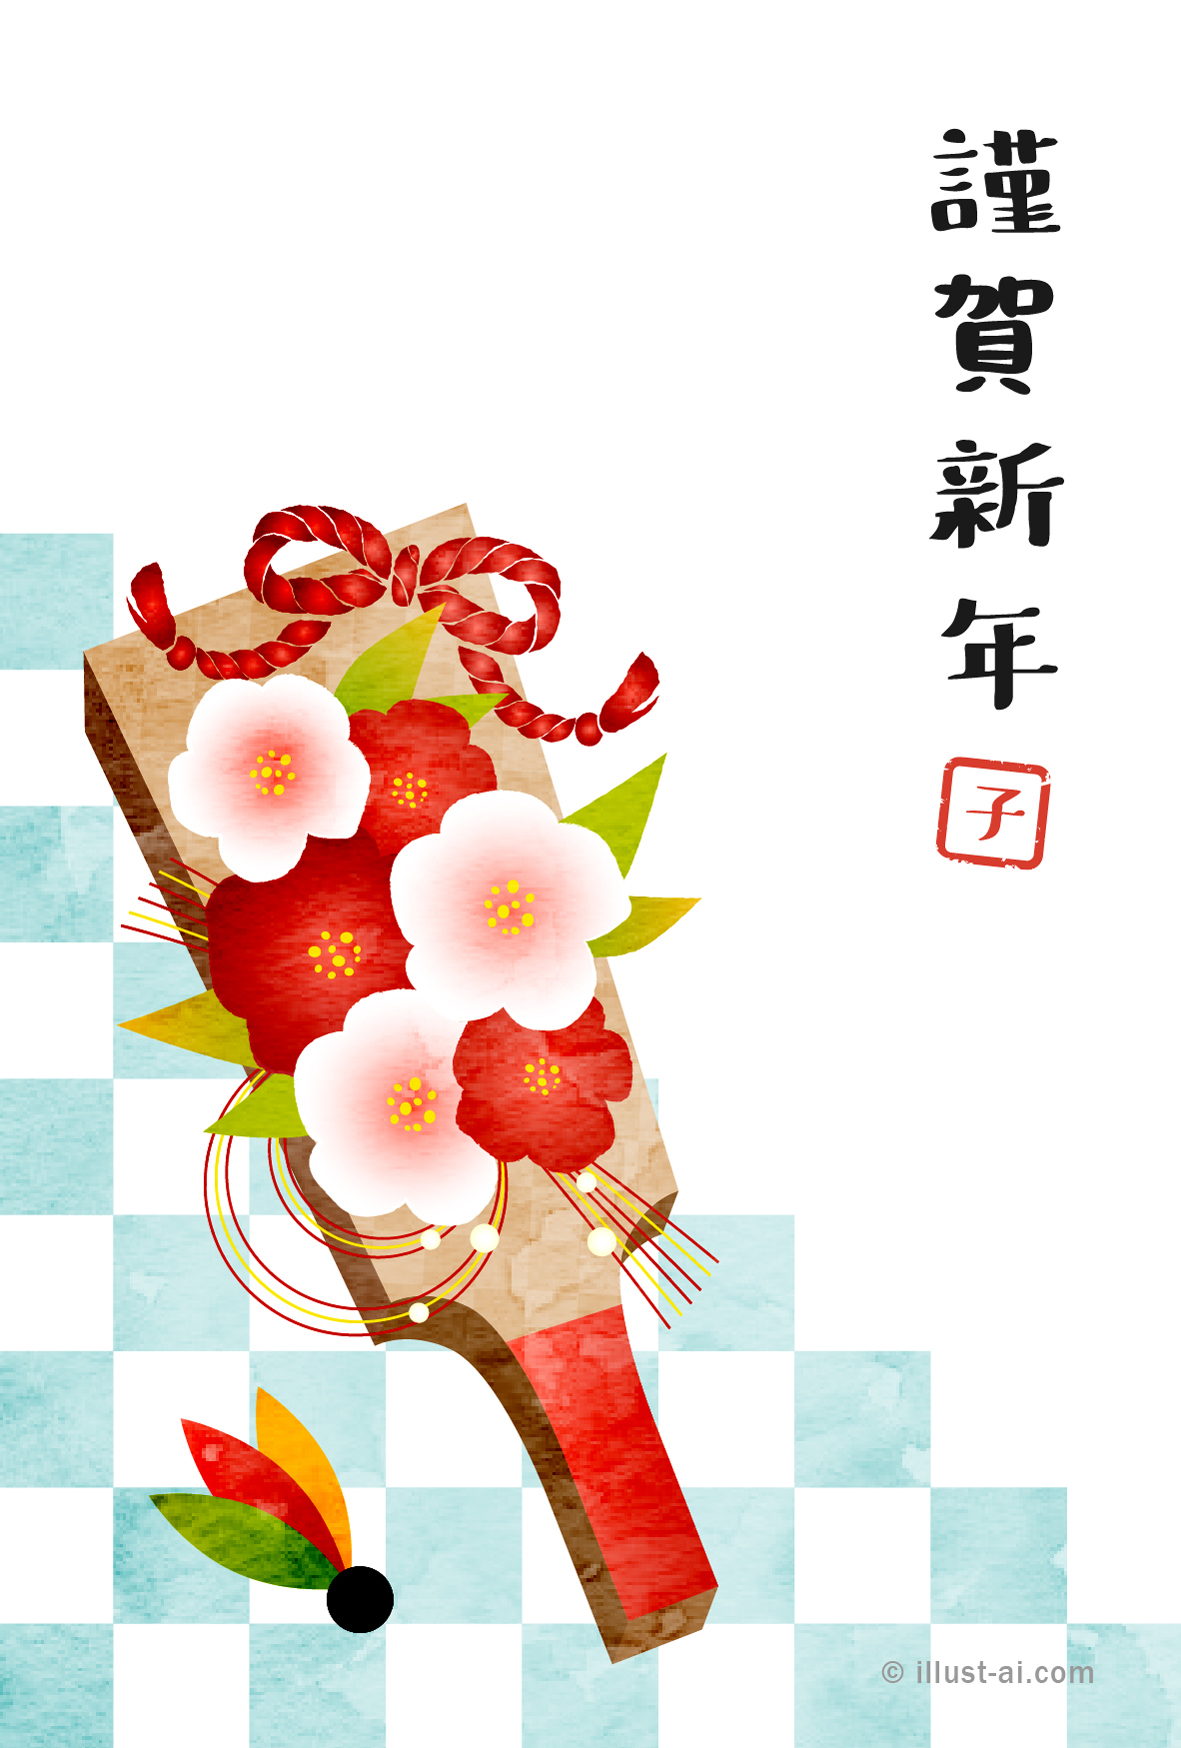 年賀状 丑年 椿の花飾り羽子板とさわやかな水色の市松模様 年賀状21無料イラスト素材集